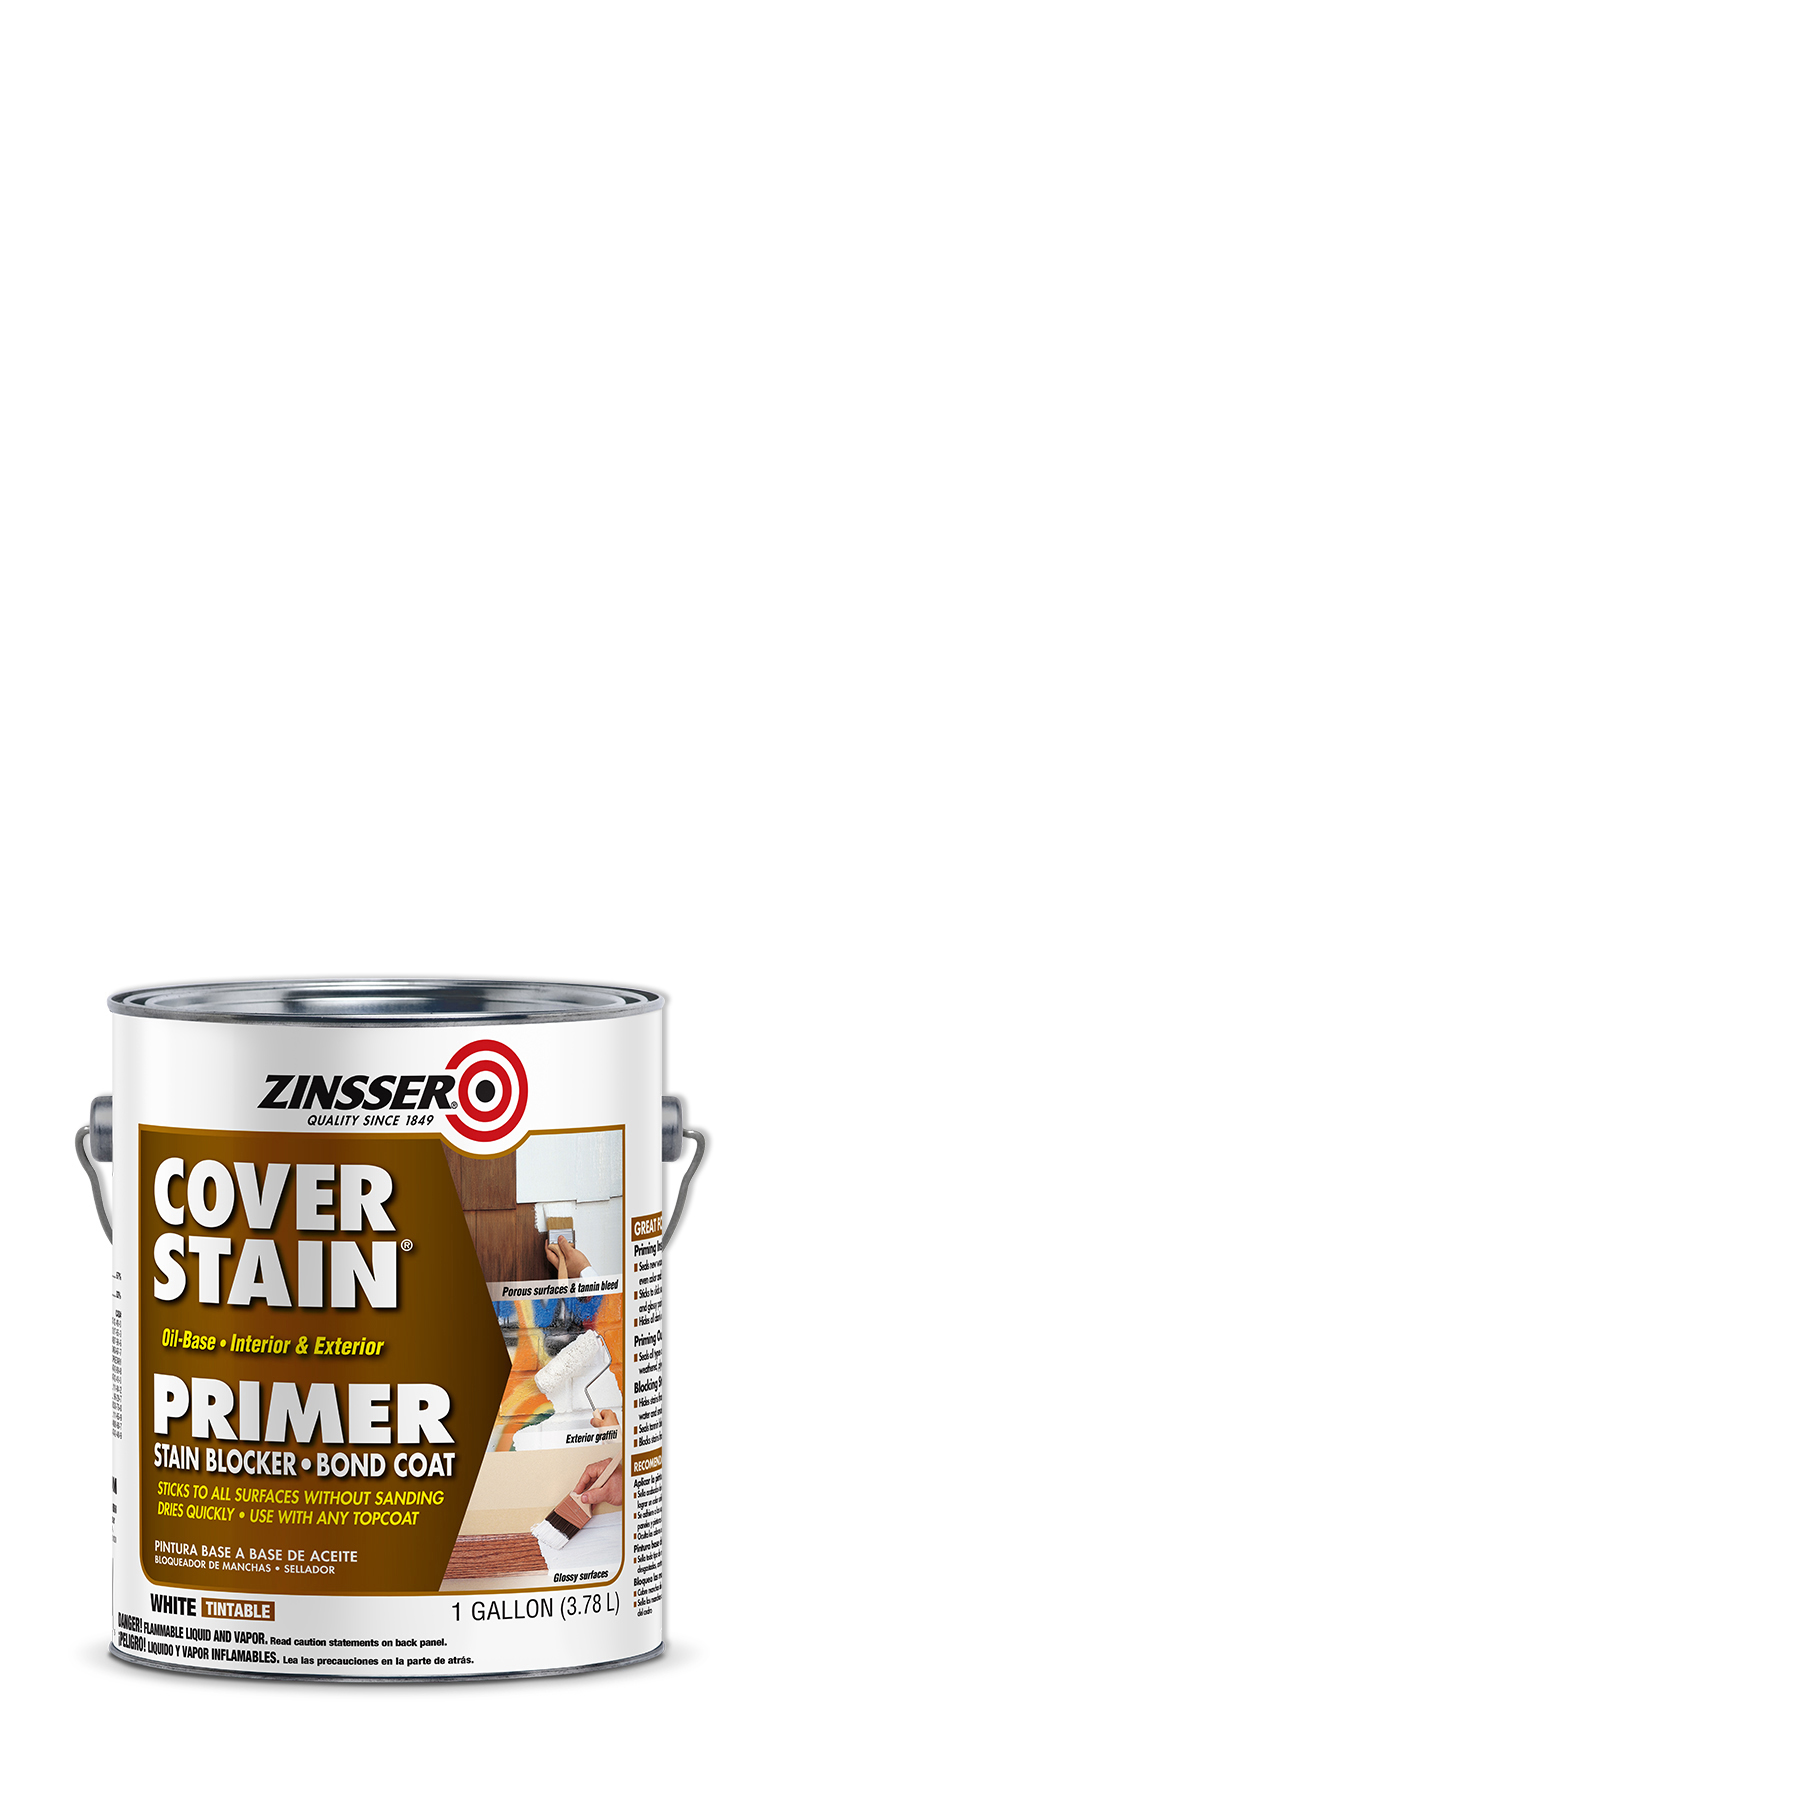 White, Zinsser Flat Cover Stain Oil Base Primer- Gallon, 4 Pack - image 1 of 7